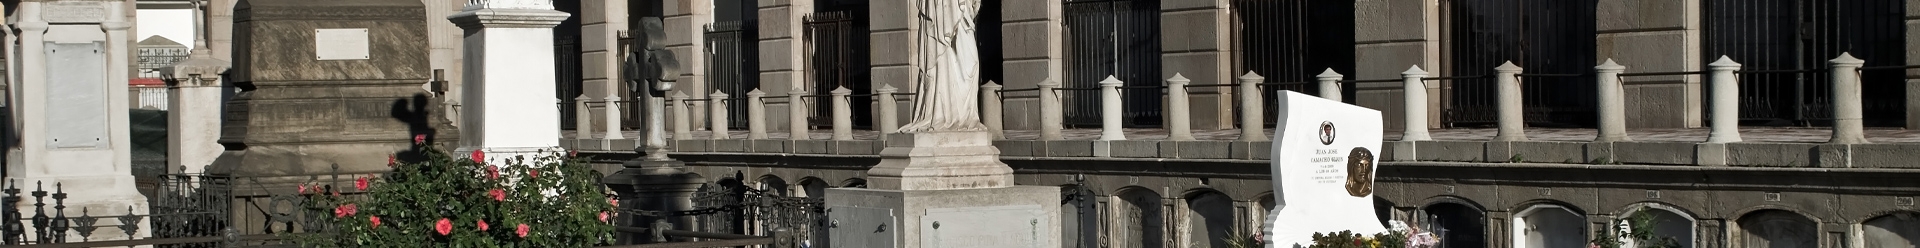 lápidas diferentes, personalizadas y únicas en Zaragoza